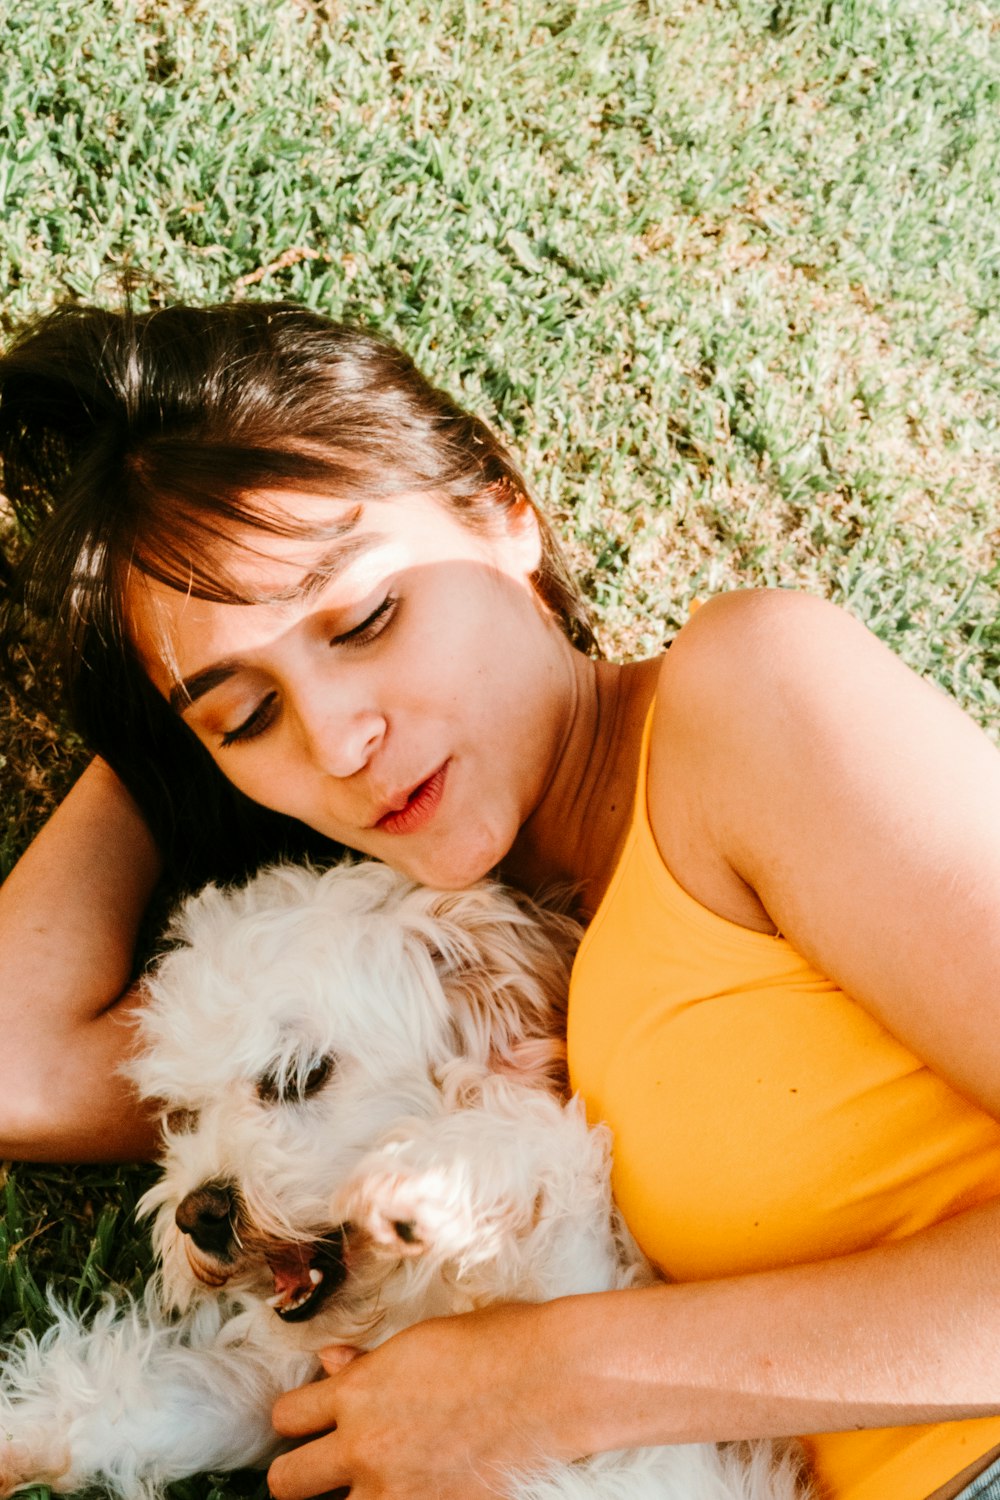 mulher na parte superior do tanque laranja deitada no campo verde da grama com o cão pequeno branco longo revestido